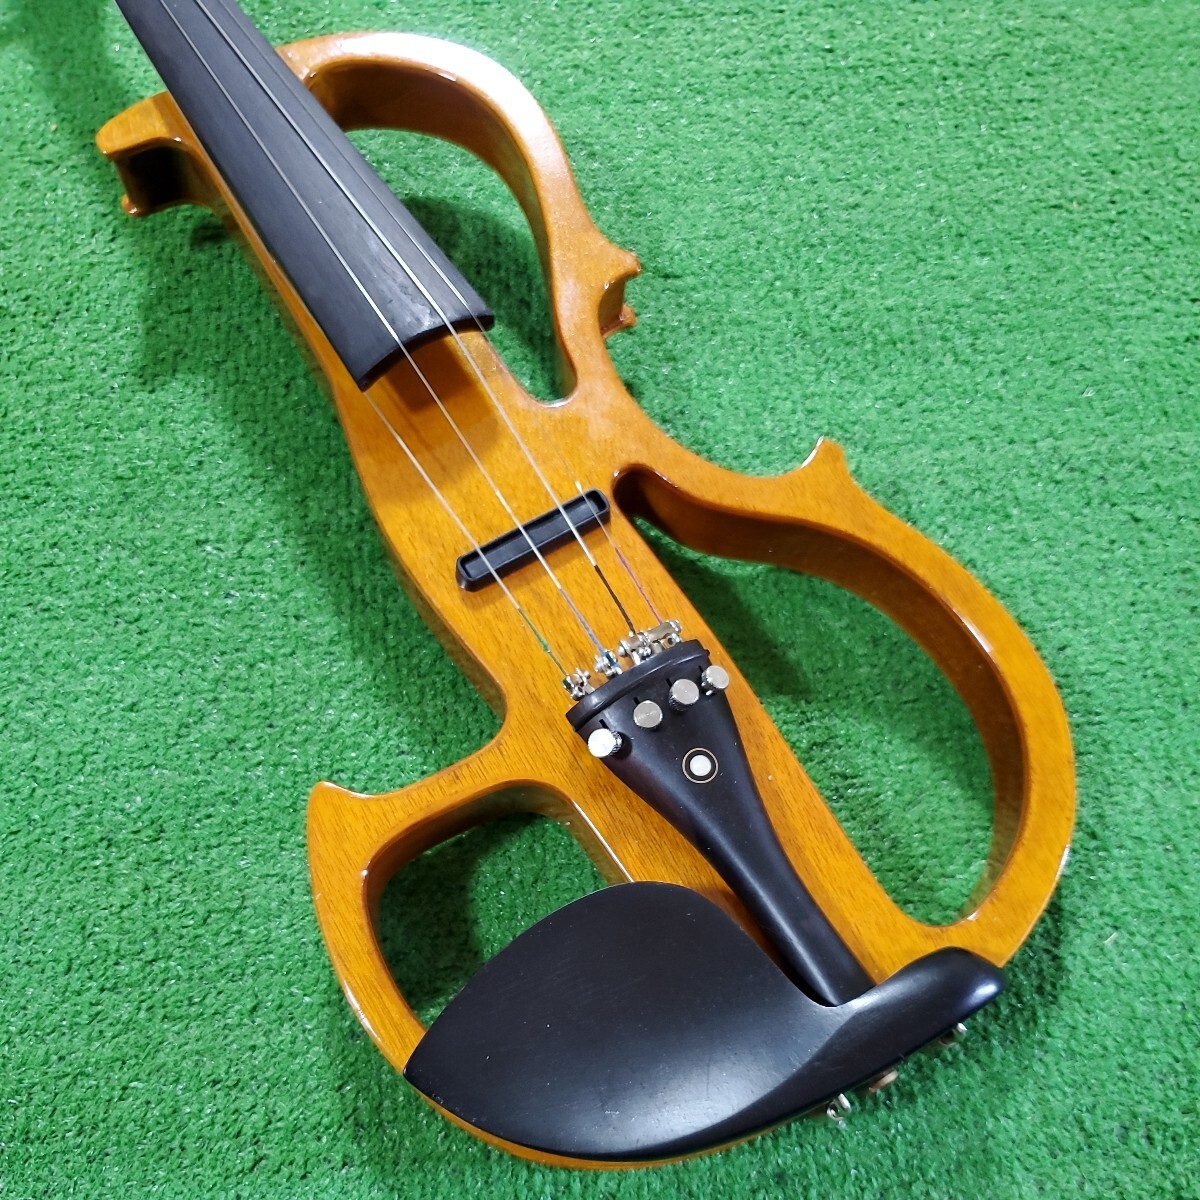 Ceciliosesi rio скрипка электрический скрипка va Io Lynn электризация подтверждено электронный скрипка музыкальные инструменты струнные инструменты кейс есть 